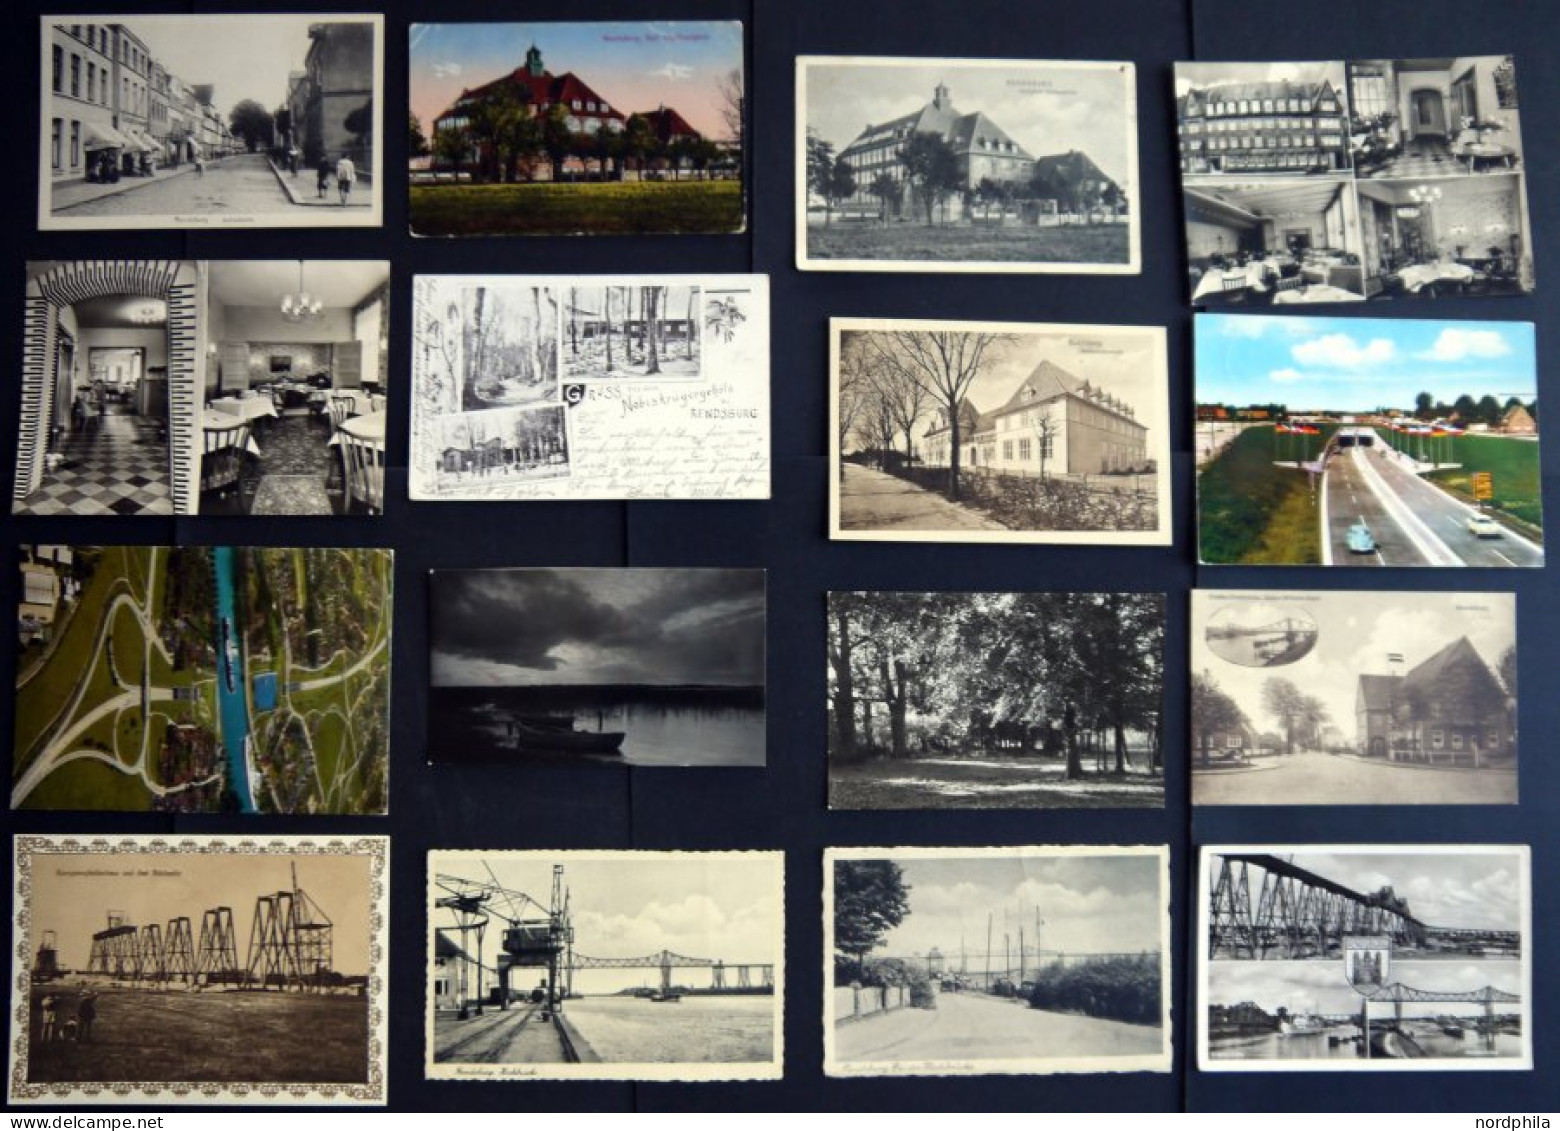 DEUTSCHLAND ETC. RENDSBURG, interessante und reichhaltige Ansichtskartensammlung mit 240 meist verschiedenen Karten in 2